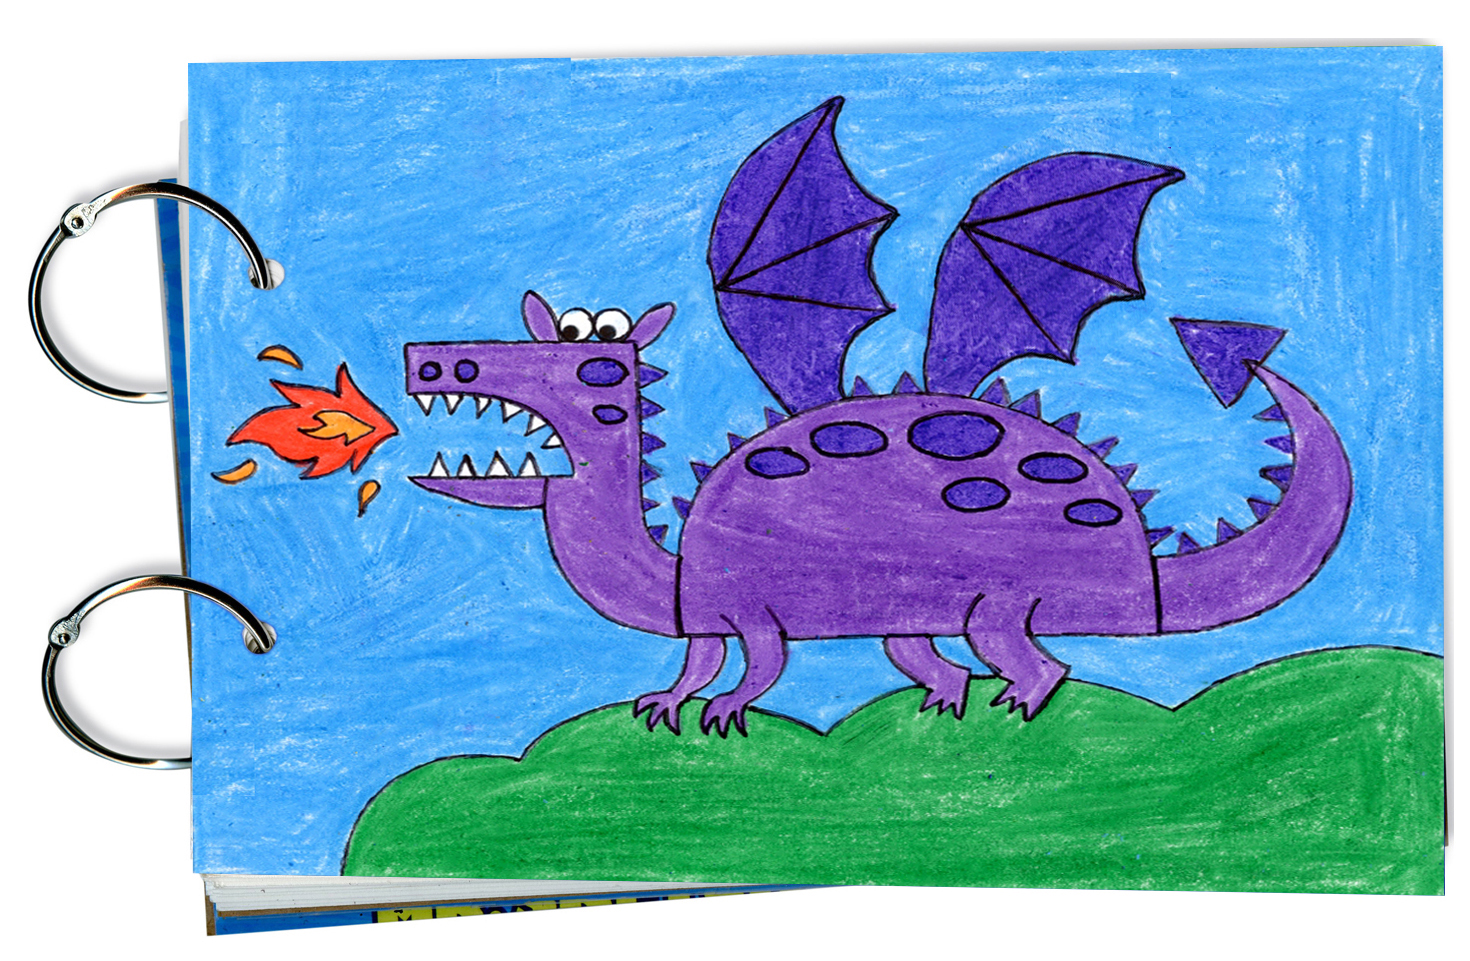 фото дракона рисунок легкий для детей